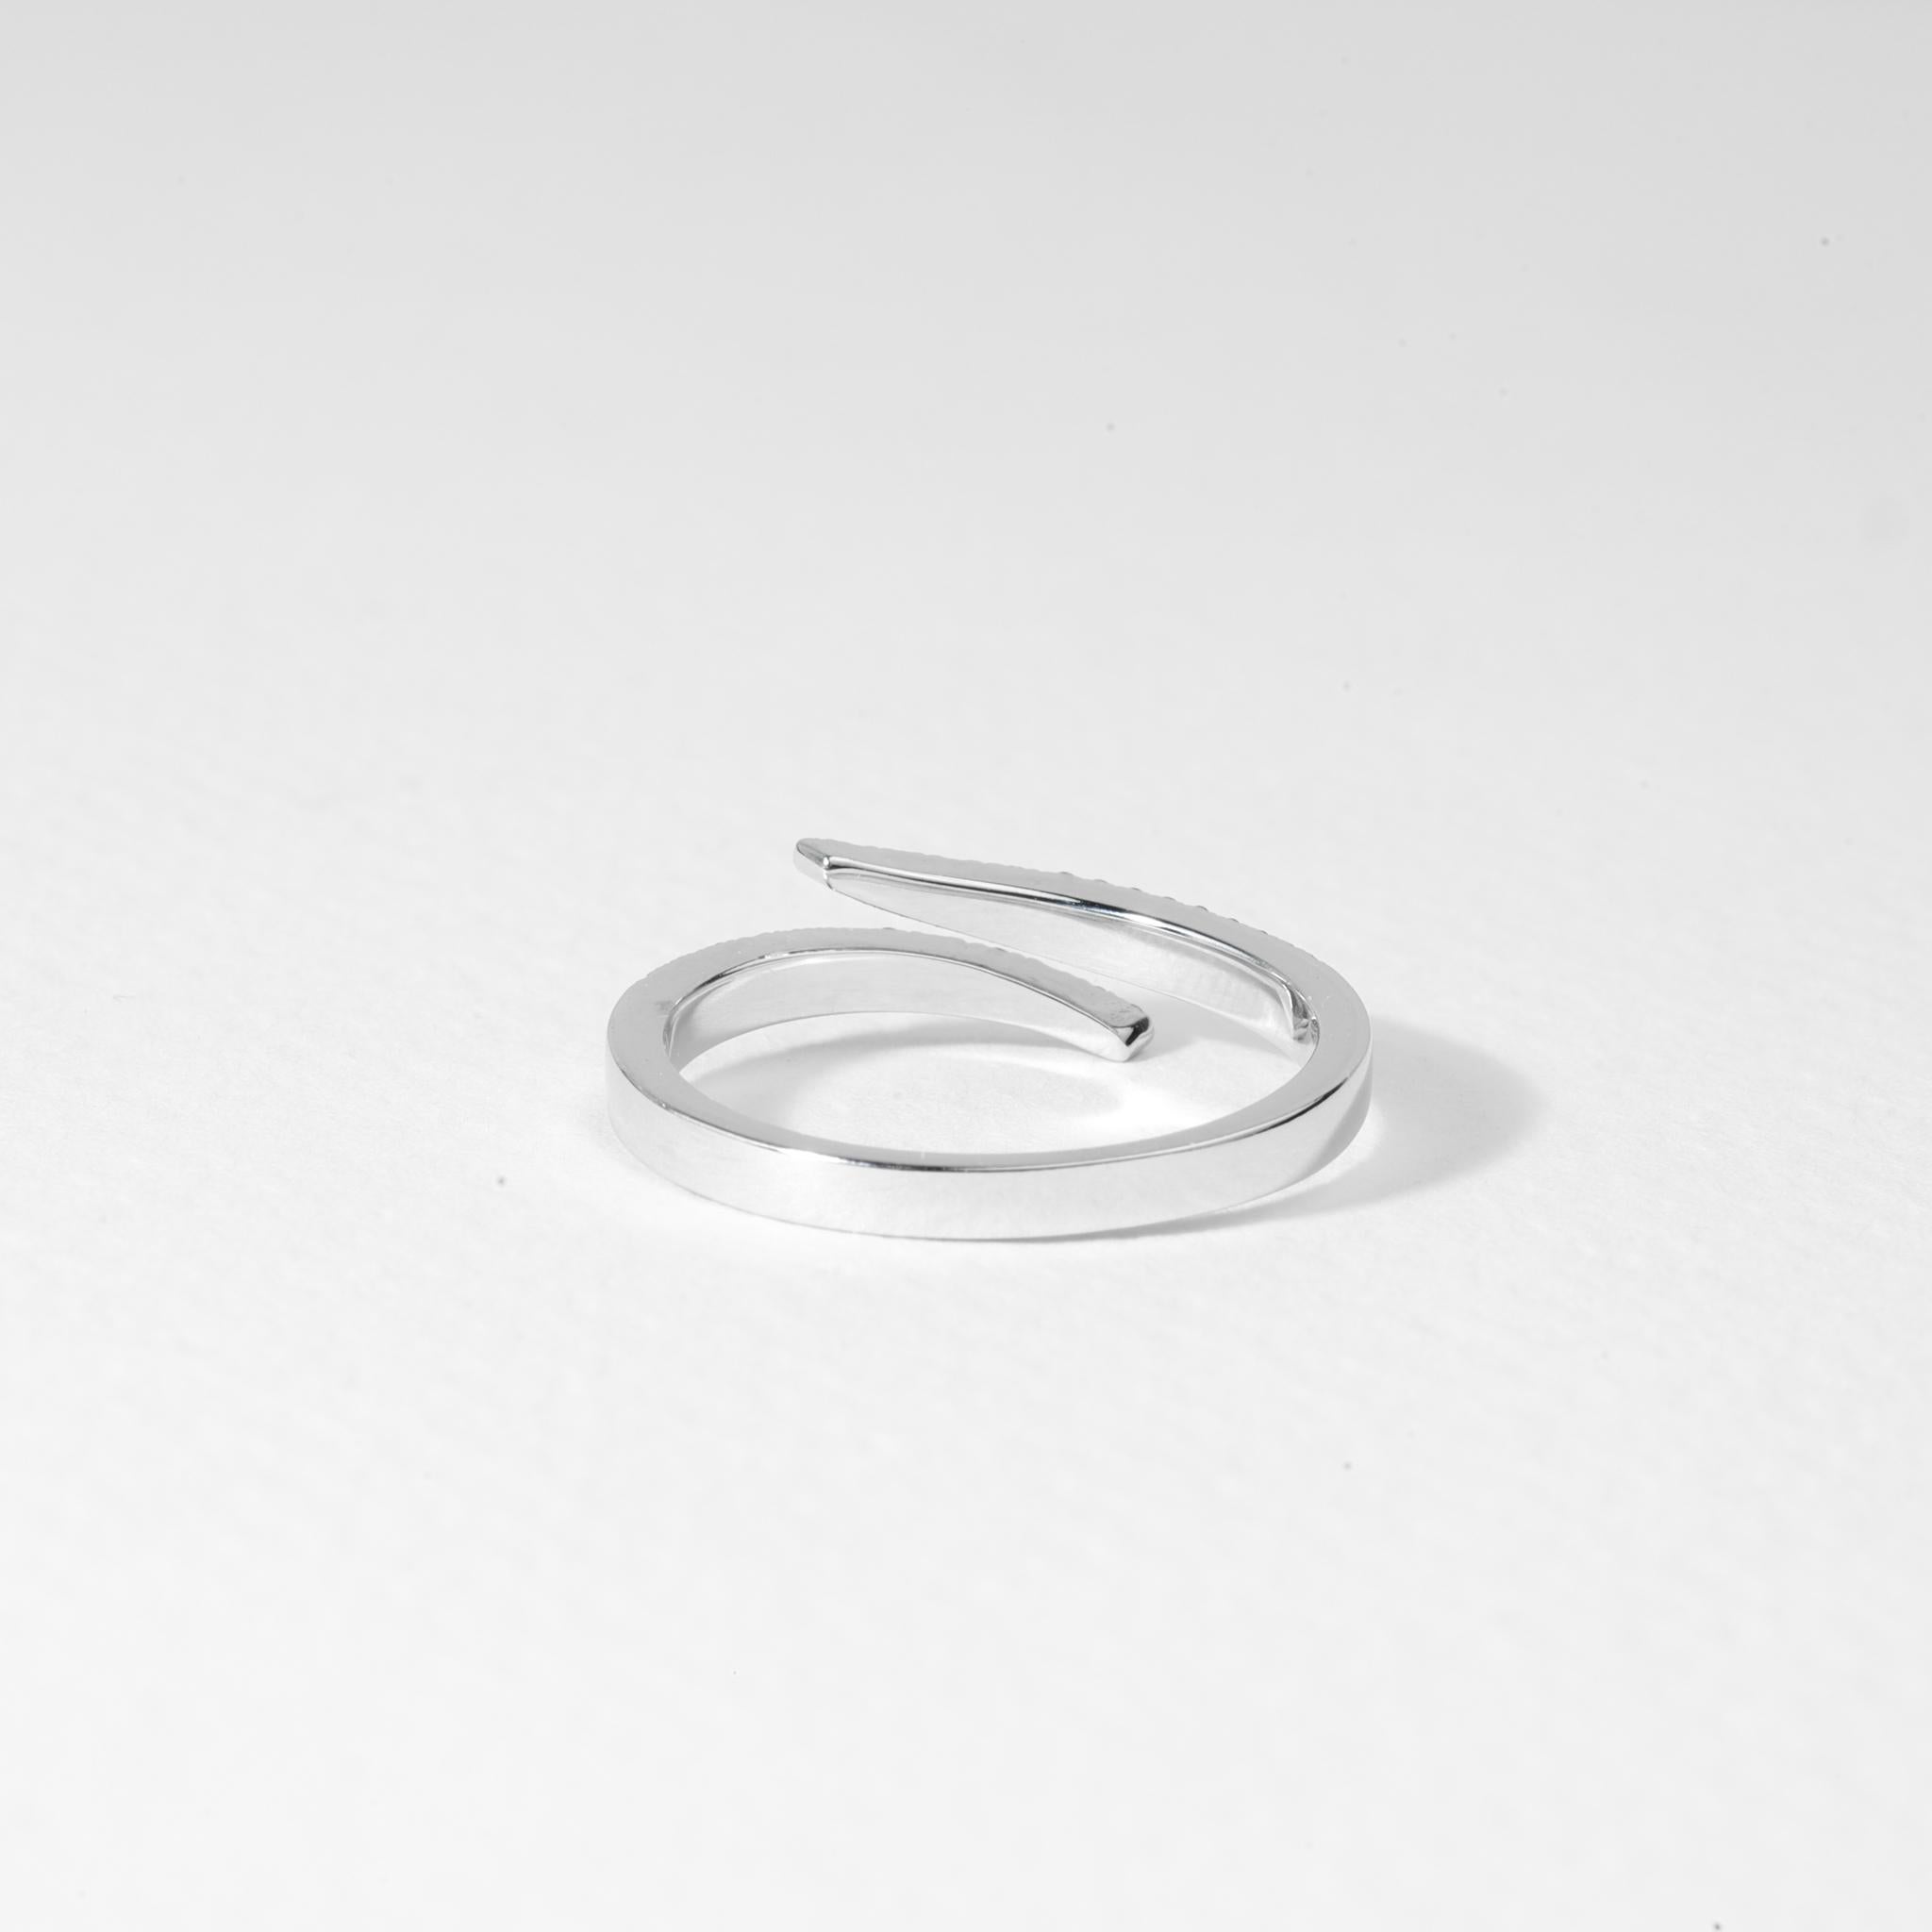 0.3 Carat Diamond Round Cut Wedding Band in 18k White Gold, E VS Diamond Ring


Disponible en or blanc 18k.

Le même design peut être réalisé avec d'autres pierres précieuses sur demande.

Détails du produit :

- Or massif

- Diamant de 0,3 carat (